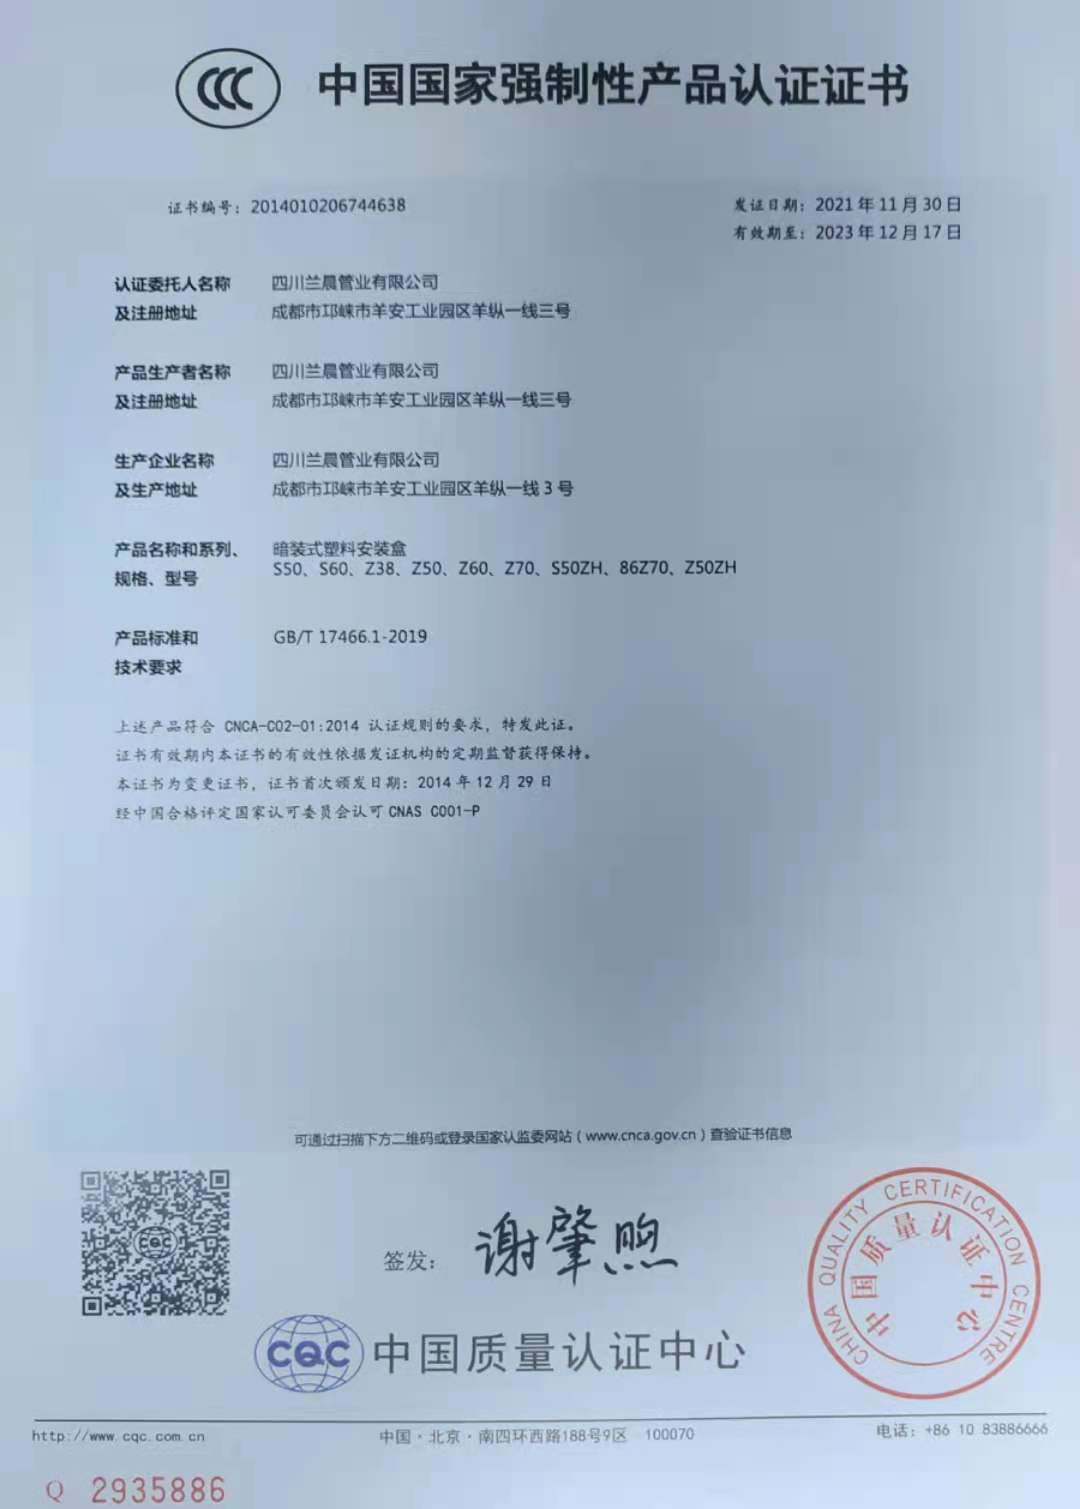 恭喜 四川兰晨管业有限公司 顺利通过审核获得国家强制性CCC认证